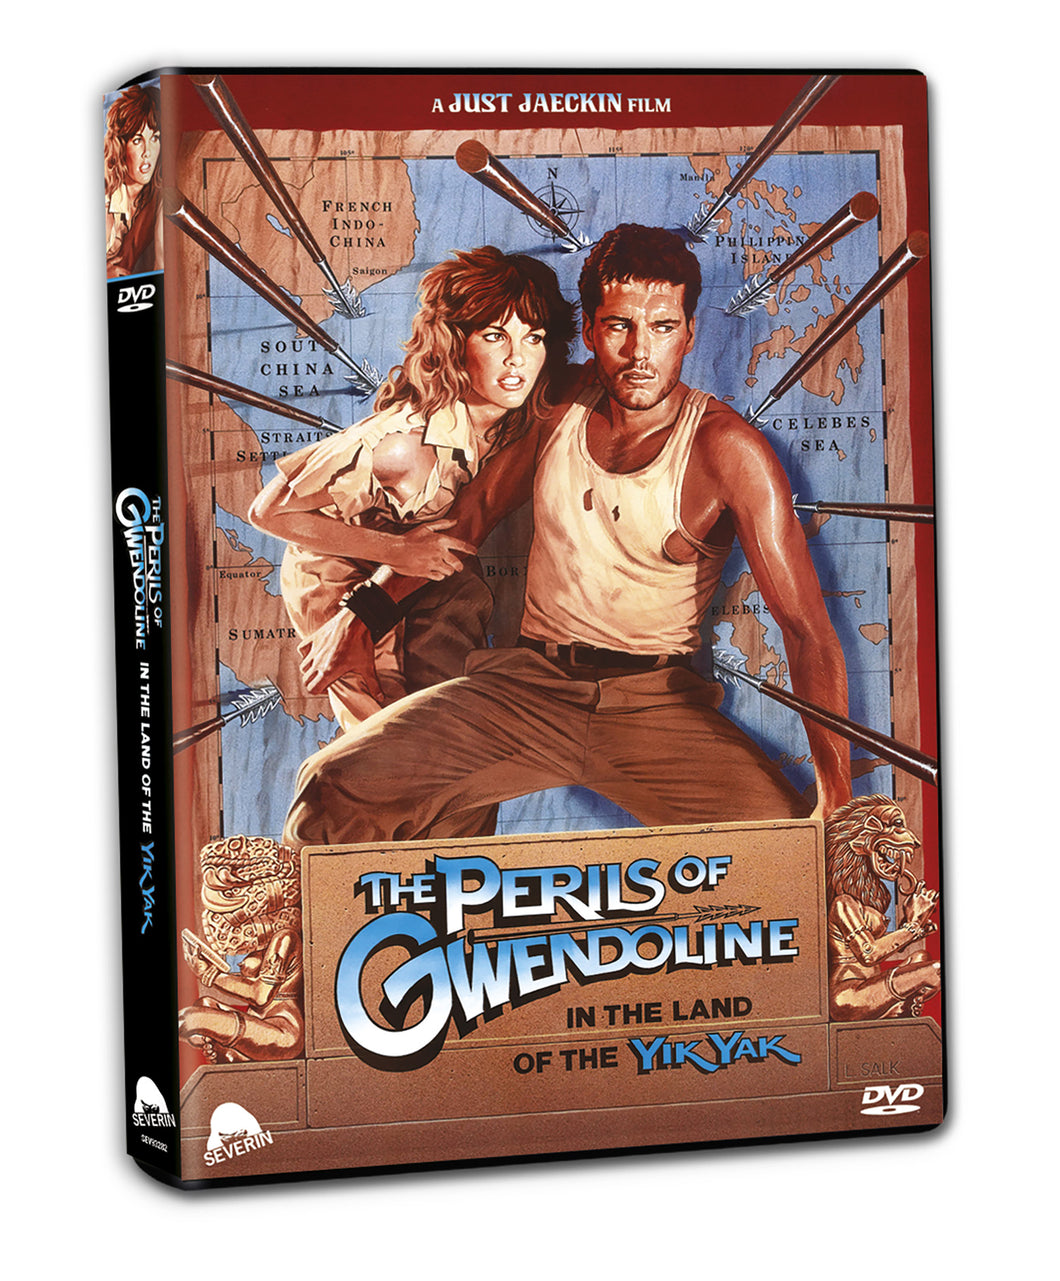 Gwendoline (DVD)